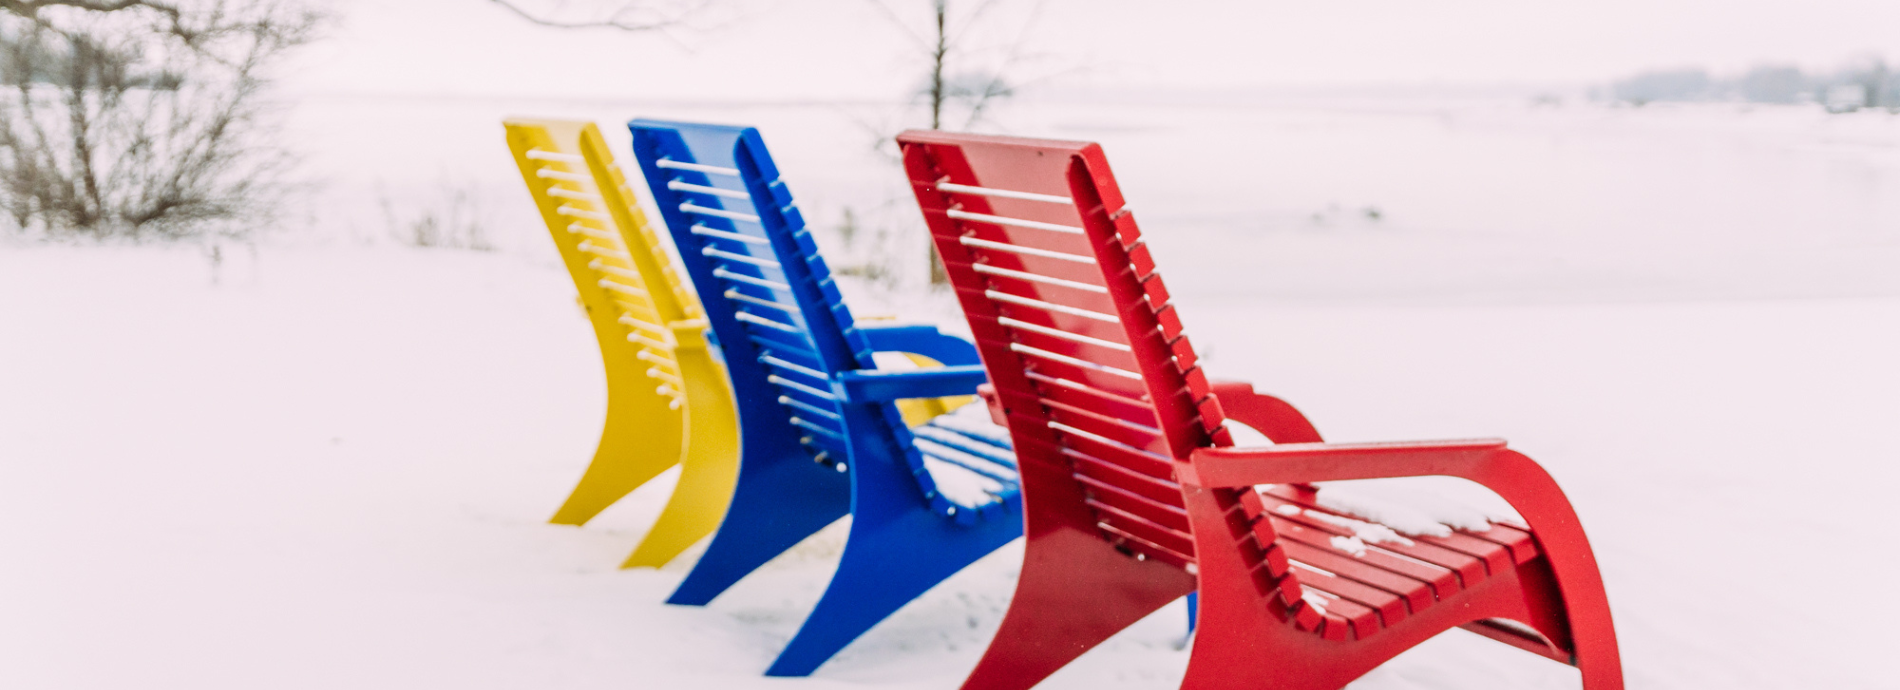 chairs in Washago Centennial Park